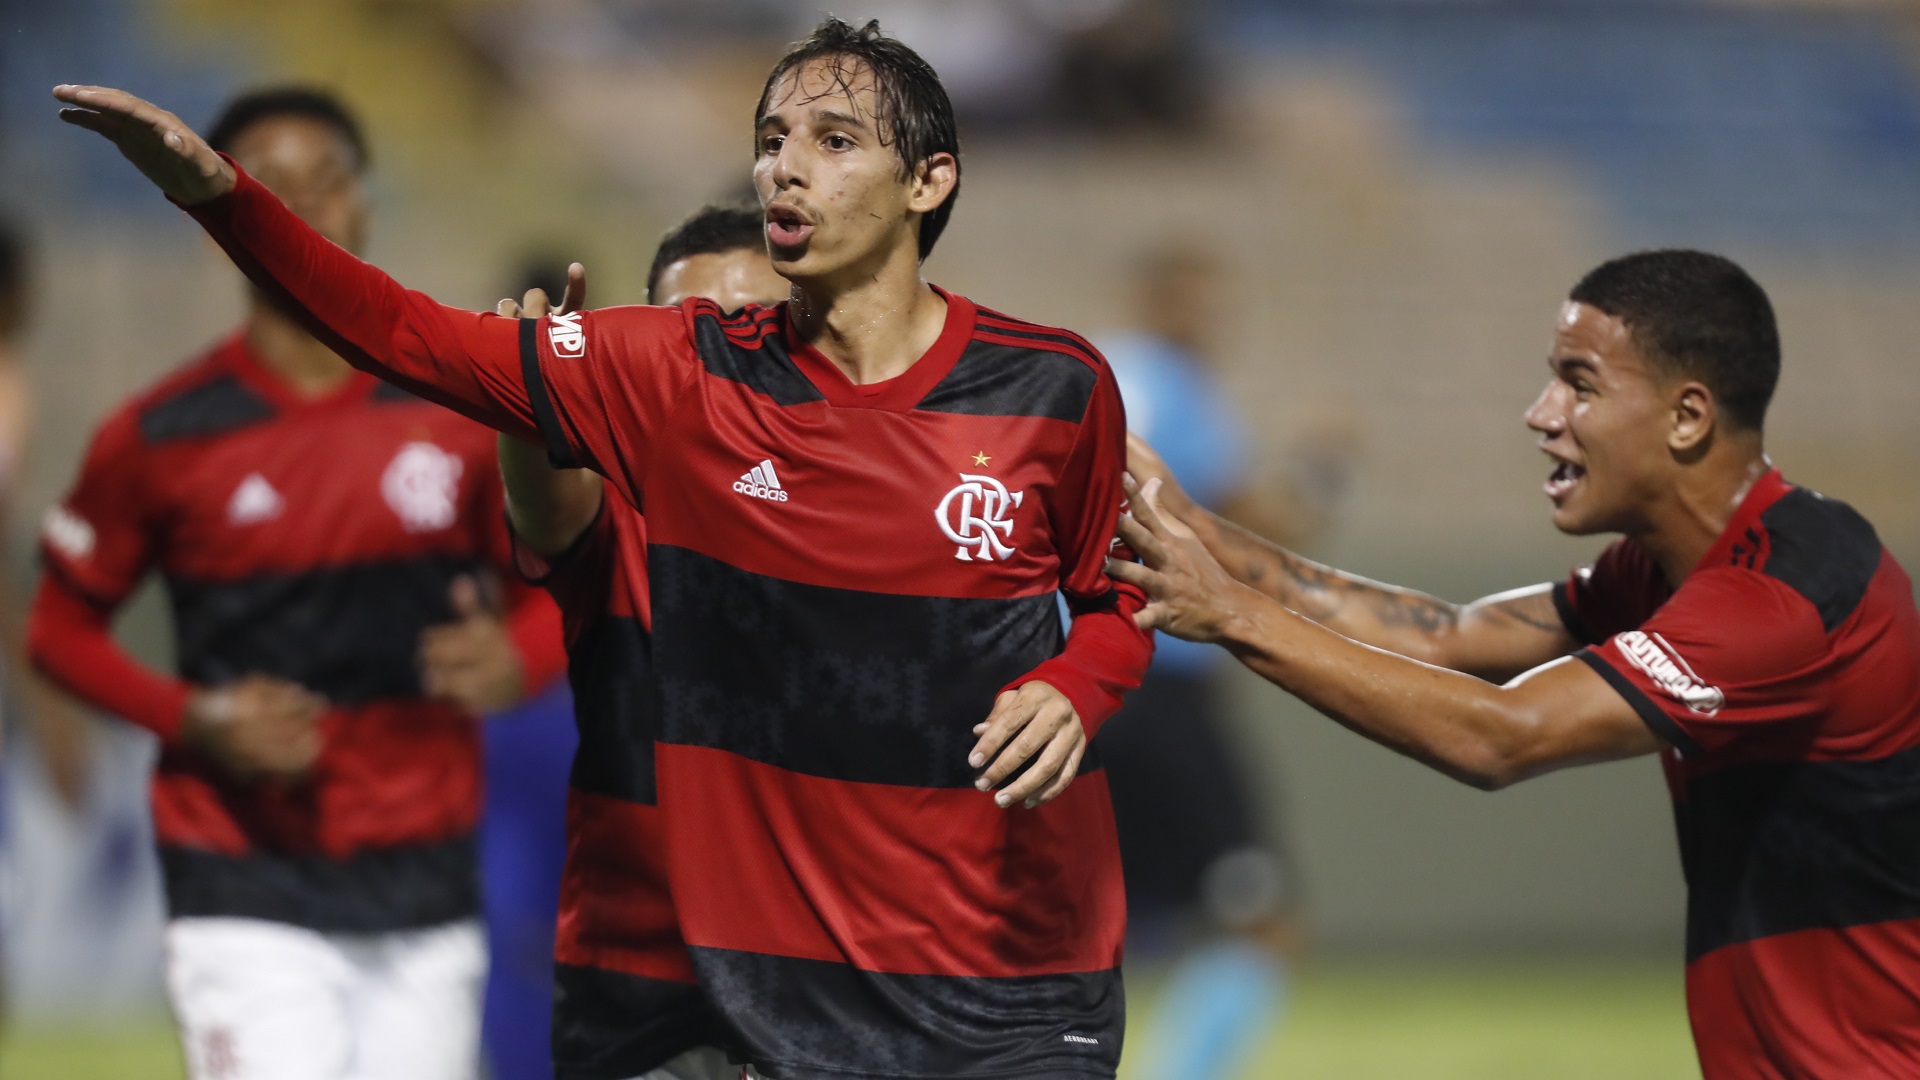 Flamengo 1 x 0 Náutico: Mengão marca nos acréscimos e avança à terceira fase da Copinha - Goal.com